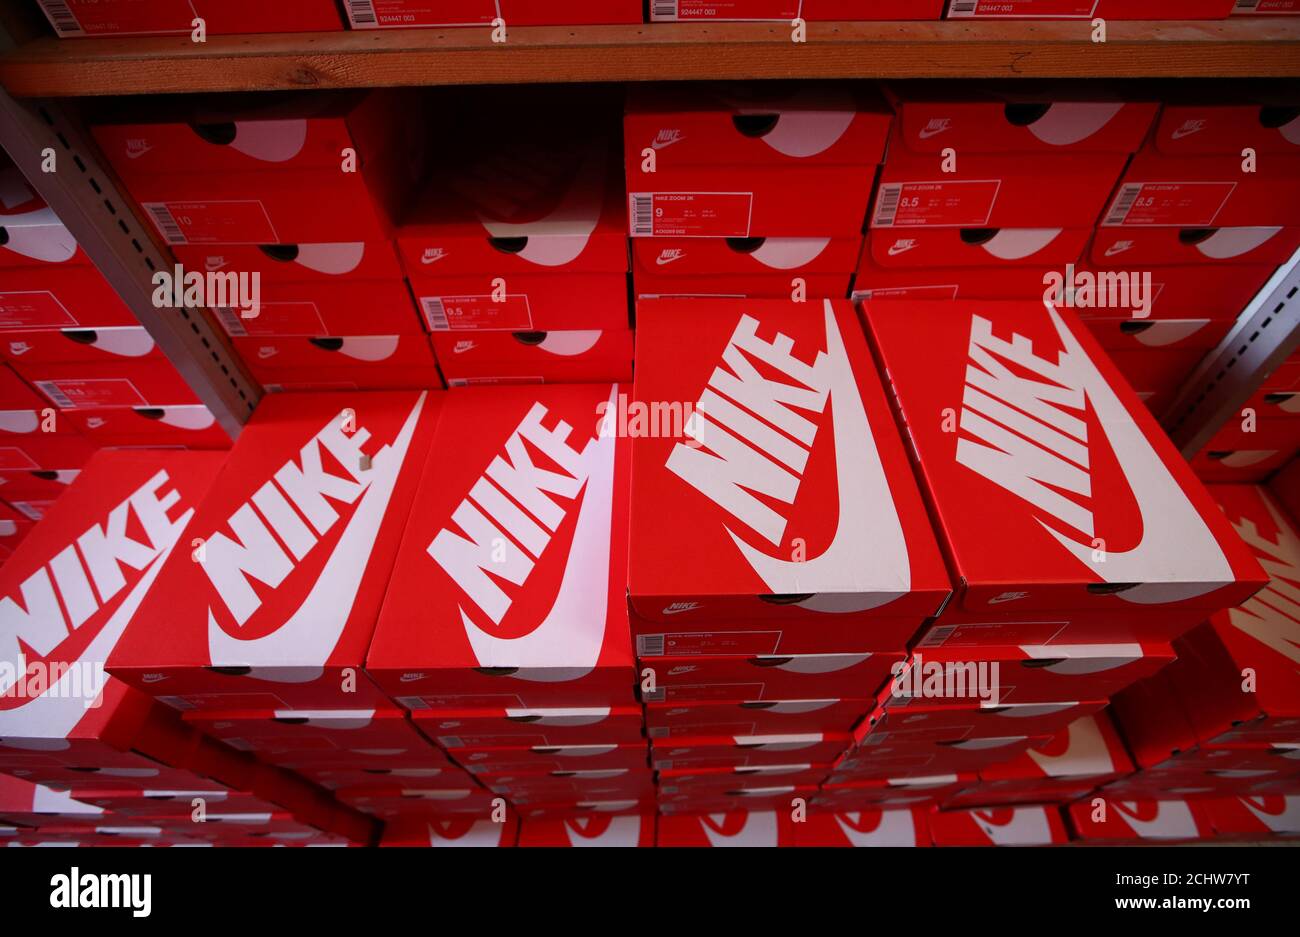 Burlas Rana Neuropatía Las cajas de zapatos Nike se muestran en el almacén de la tienda local de  calzado 'Pomp It Up' en Bussigny cerca de Lausana, Suiza 24 Aprill, 2019.  REUTERS/Denis Balibouse Fotografía de